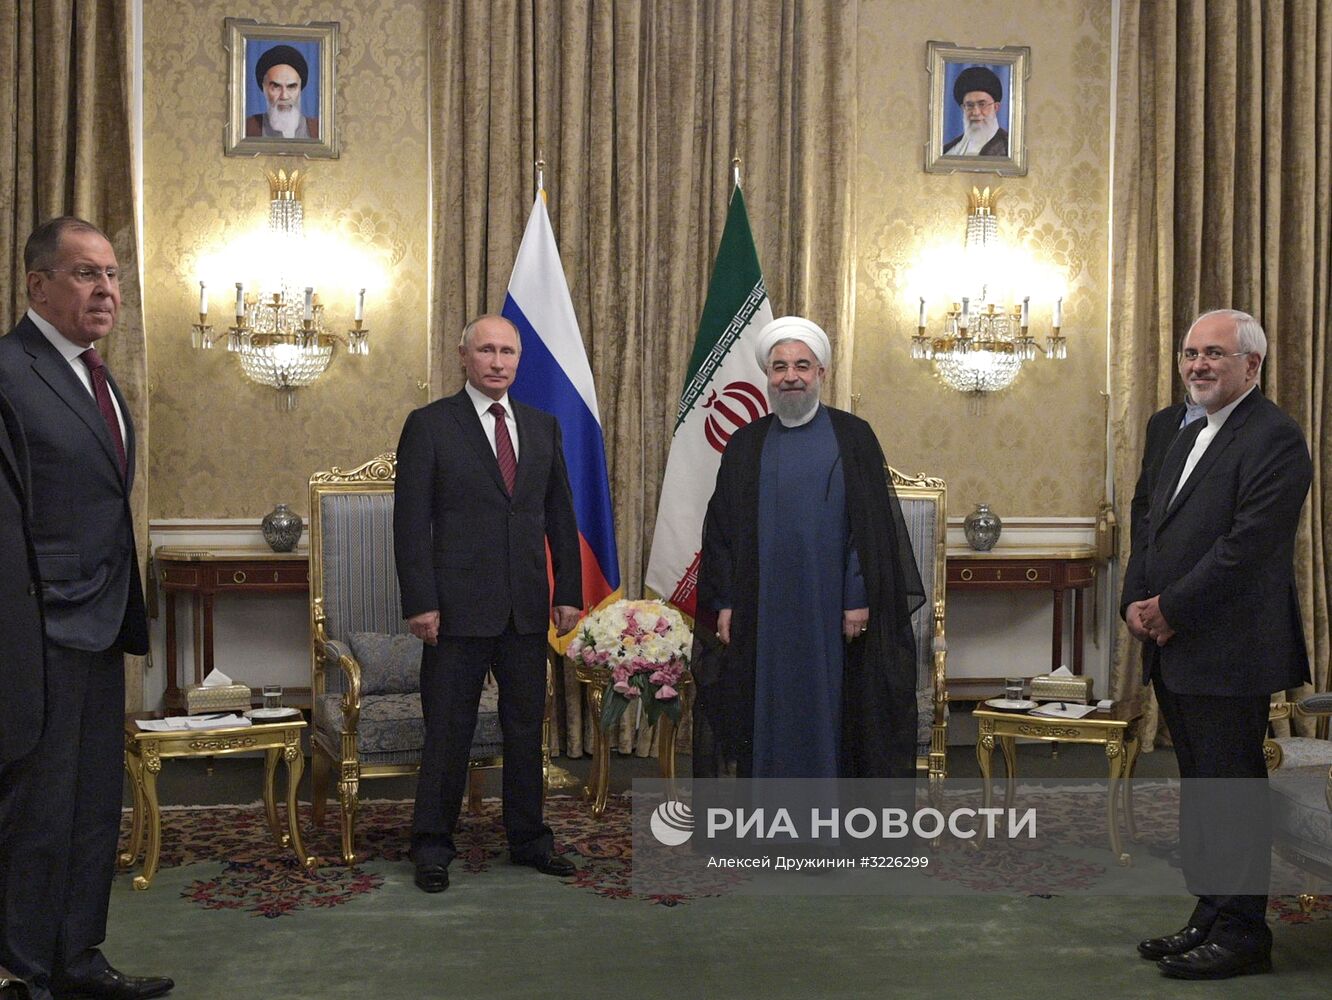 Рабочий визит президента РФ В. Путина в Иран